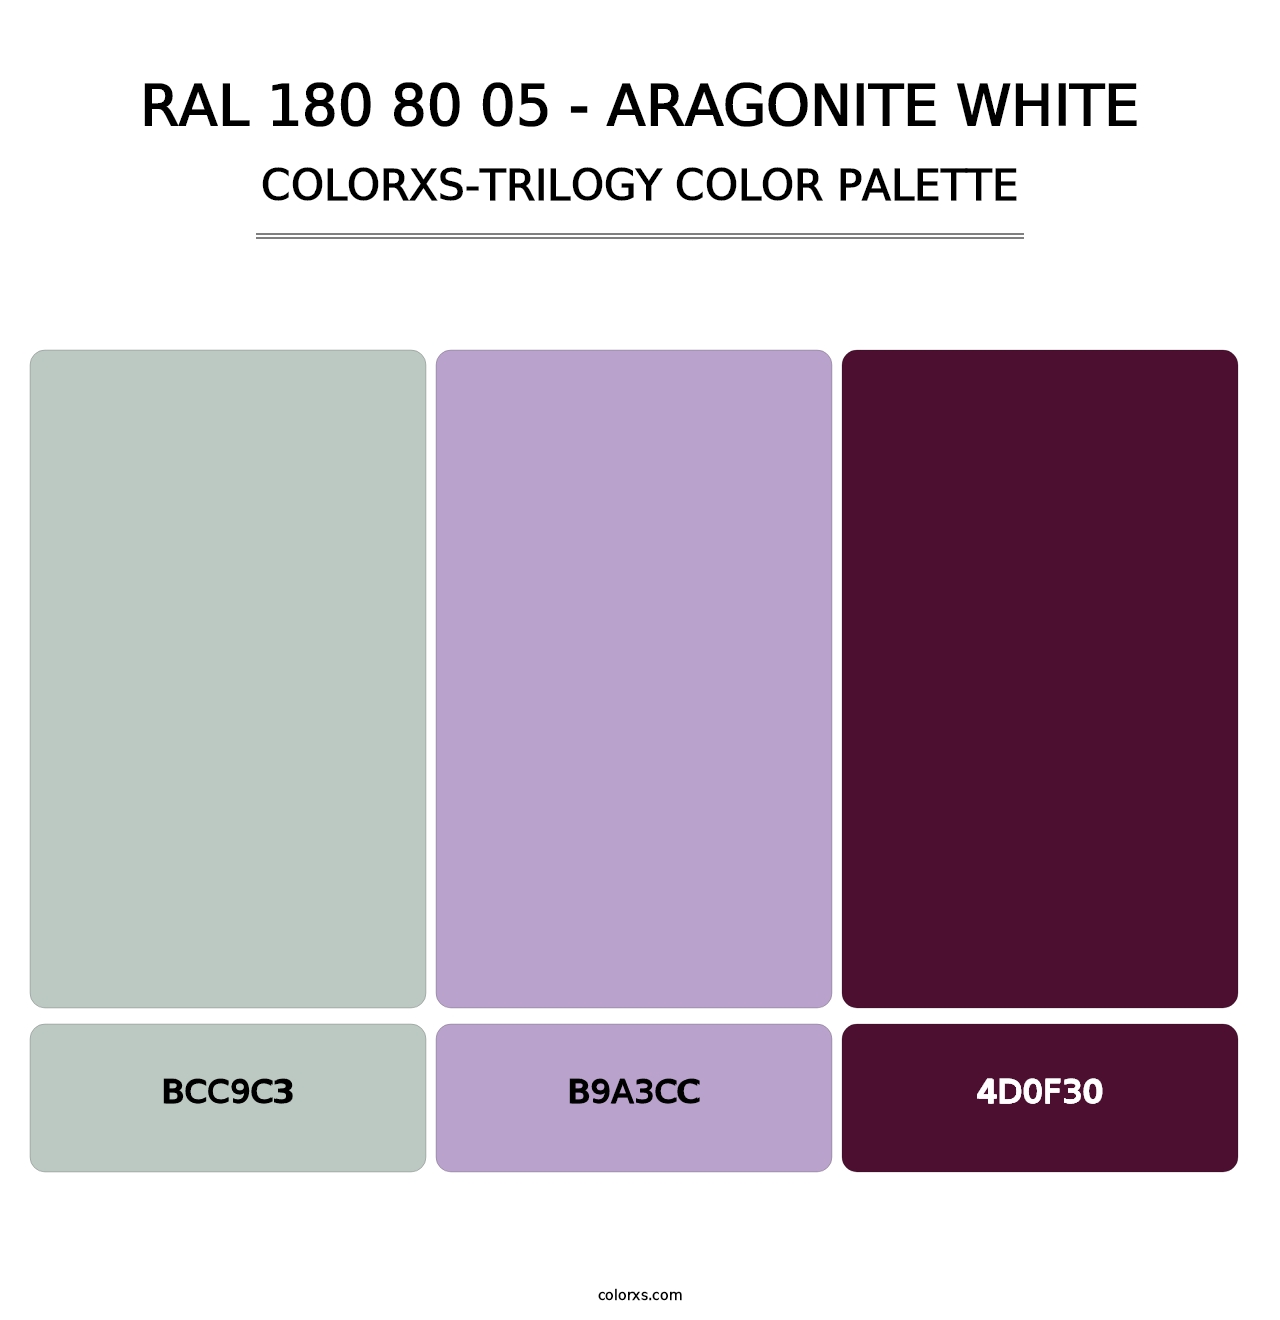 RAL 180 80 05 - Aragonite White - Colorxs Trilogy Palette